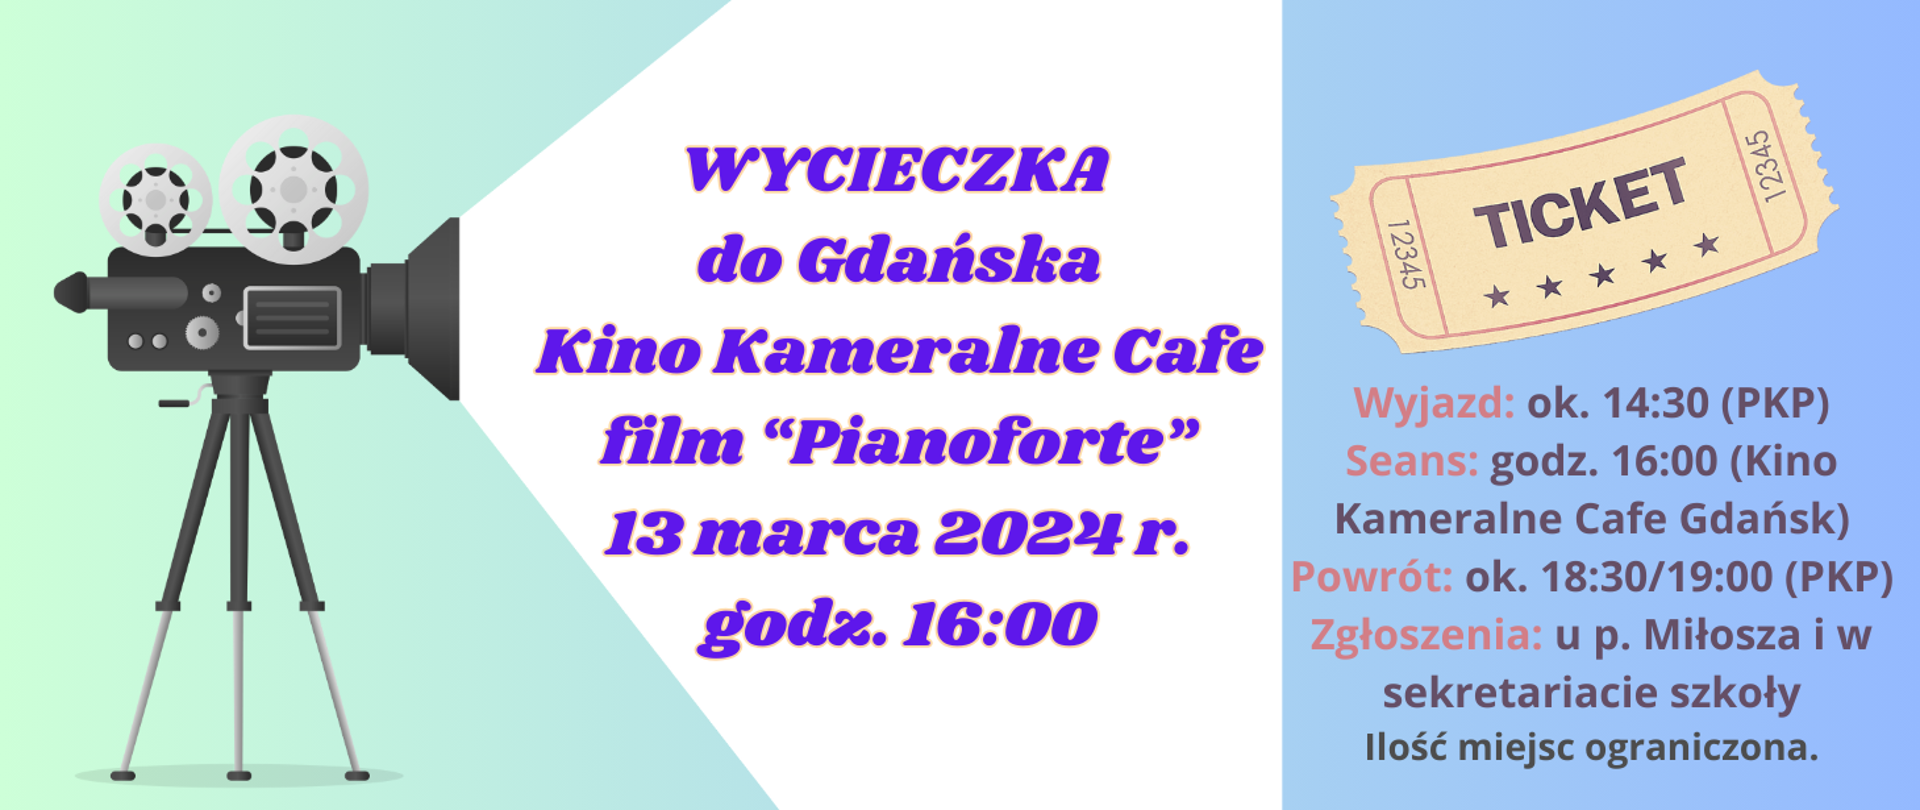 Z lewej strony na zielonym tle grafika kamery wyświetlającej napis: Wycieczka do Gdańska Kino Kameralne Cafe film "Pianoforte" 13 marca 2024 r. godz. 16:00. Z prawej strony grafika starego biletu i pod tym napis: Wyjazd: ok. 14:30 (PKP), Seans: godz. 16:00 (Kino Kameralne Cafe Gdańsk), Powrót: ok. 18:30/19:00 (PKP), Zgłoszenia: u p. Miłosza i w sekretariacie szkoły. Ilość miejsc ograniczona.